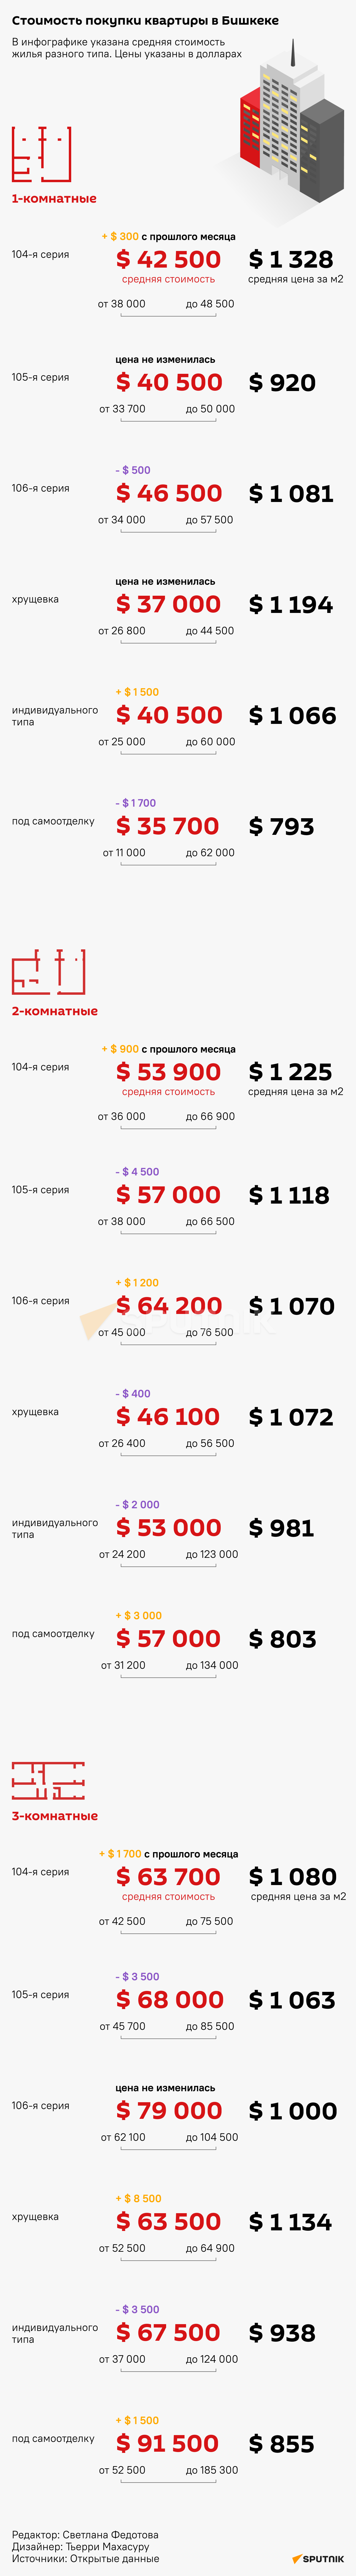 Стоимость покупки квартиры в Бишкеке - Sputnik Кыргызстан